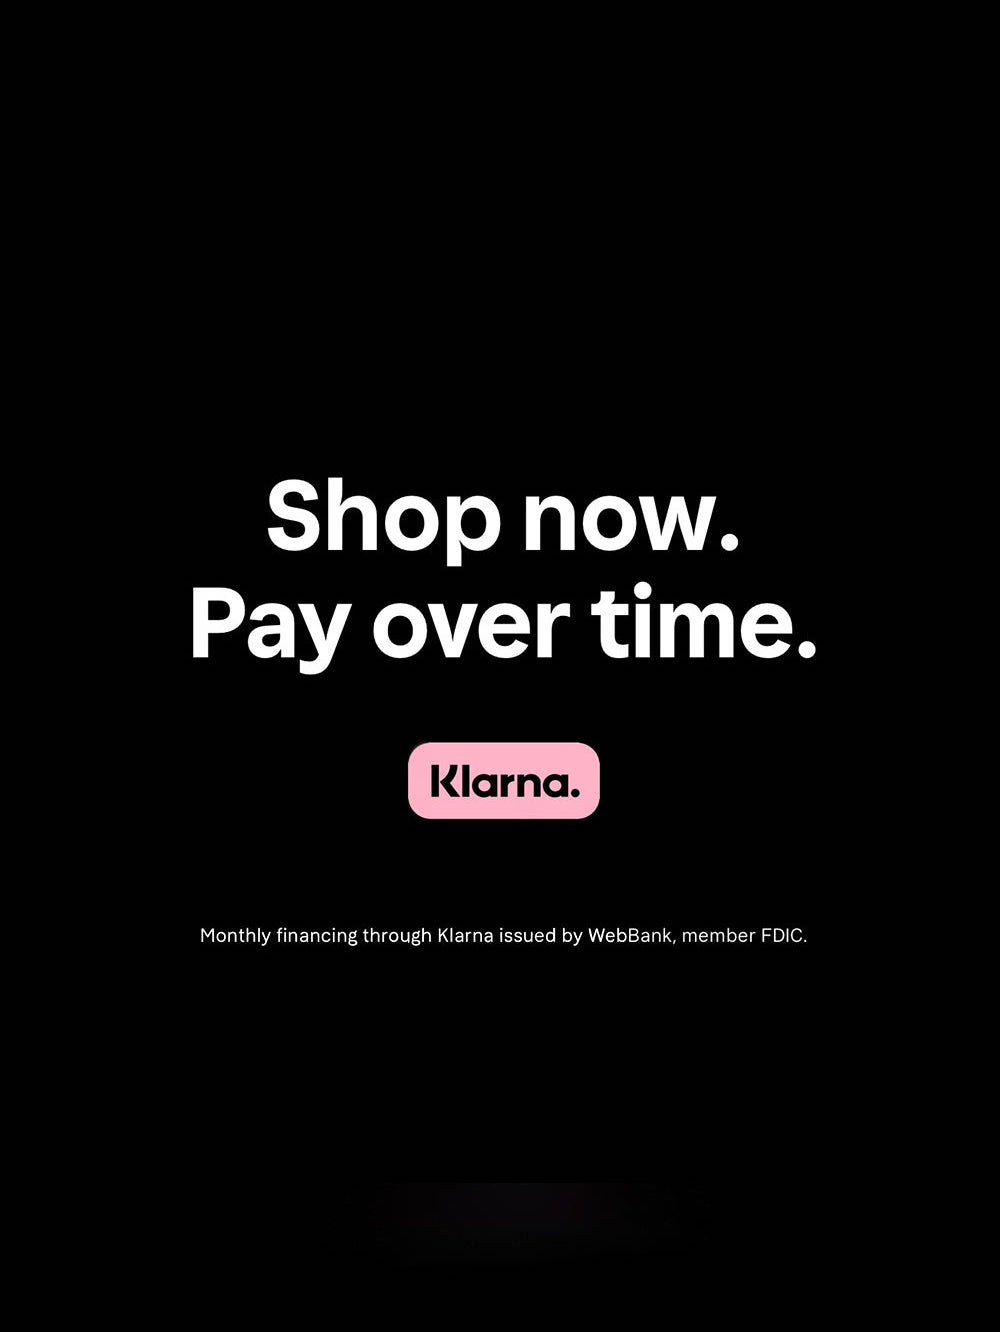 Shop Now. Pay Over Time. - OLAPLEX Inc.